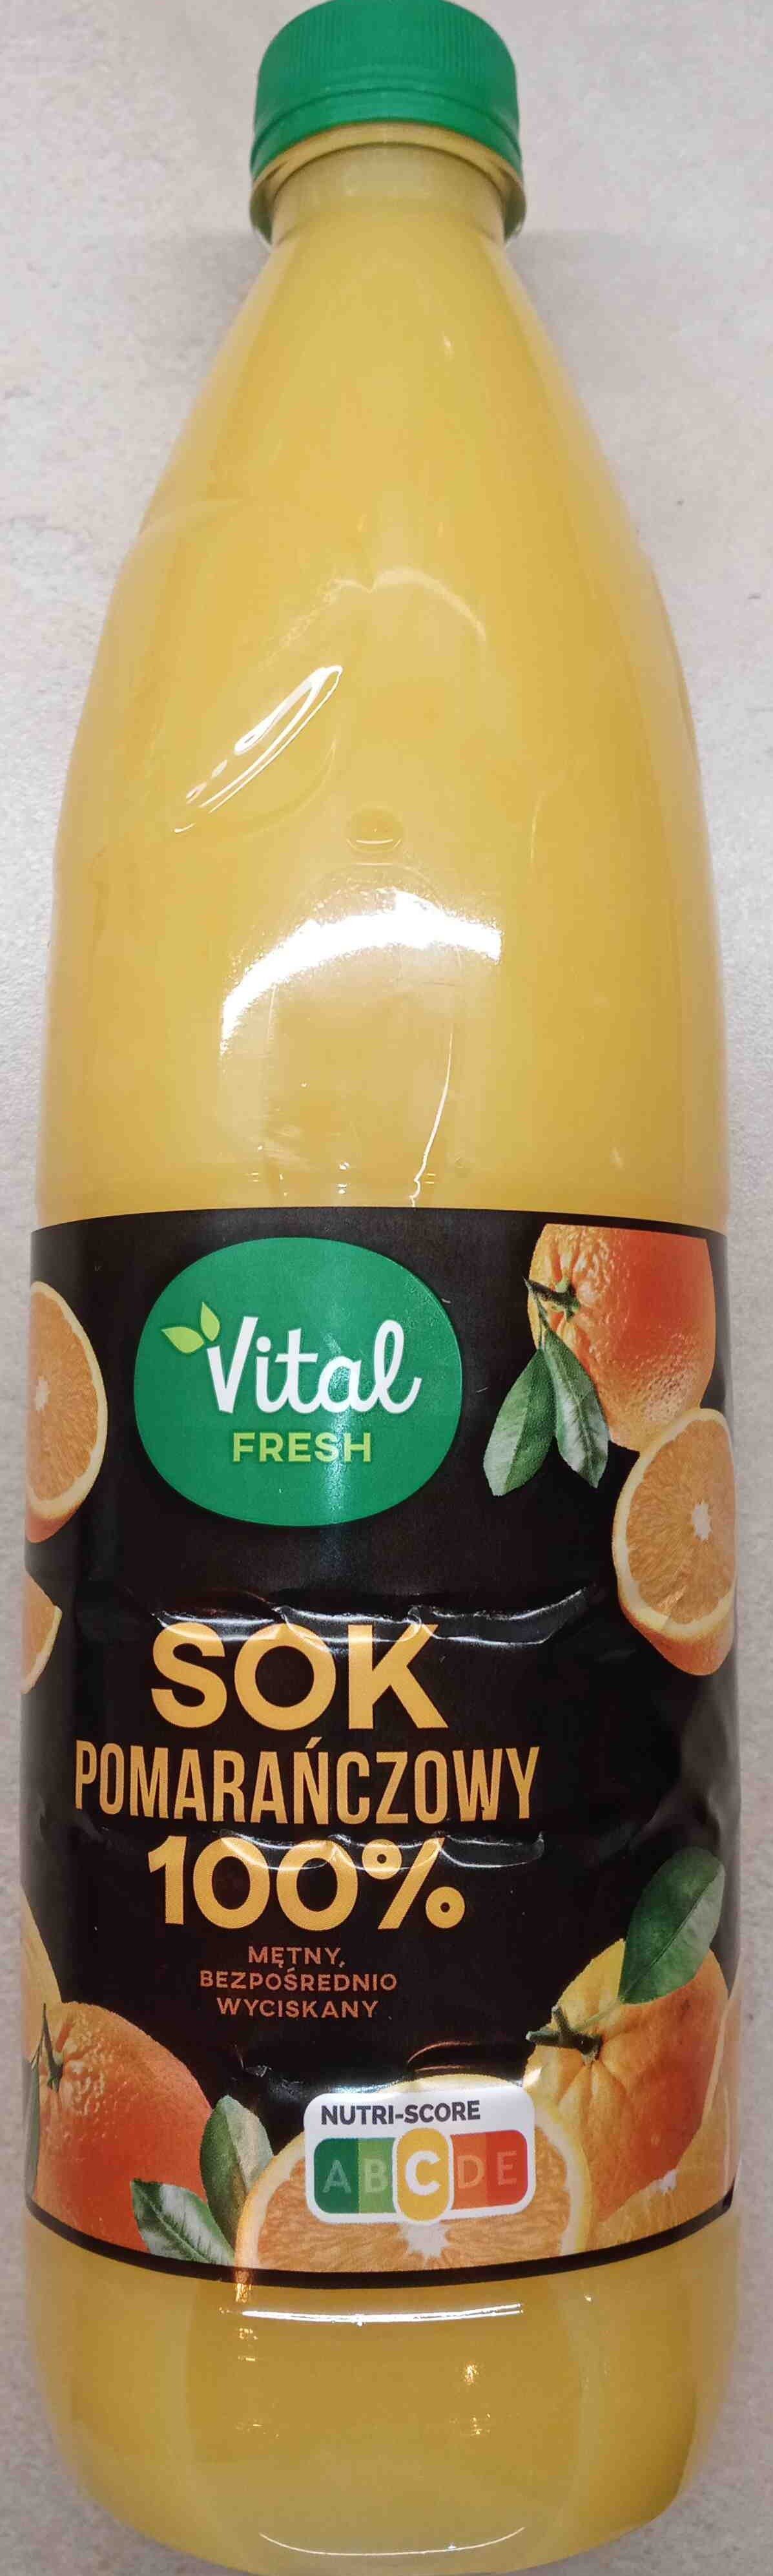 Sok pomarańczowy - Produkt - en